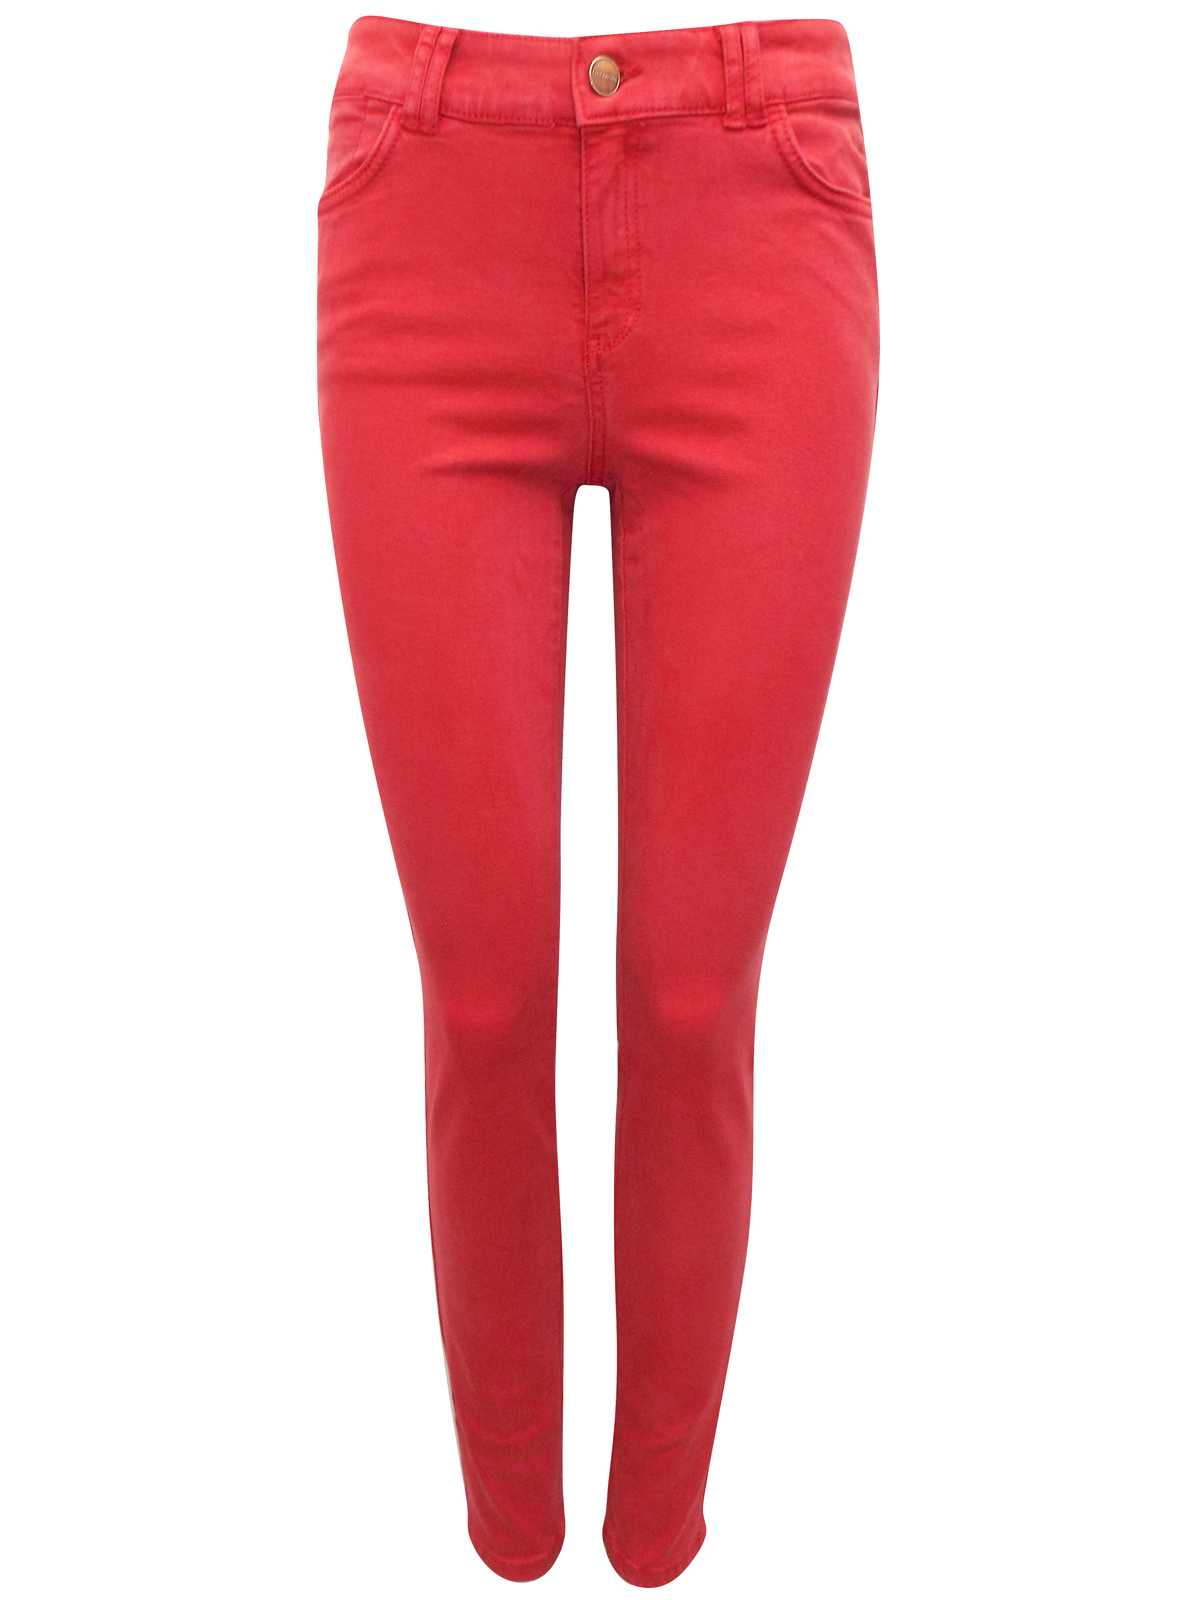 Clockhouse RED 5-Pocket Denim Super Skinny Jeans - Size 6 to 16